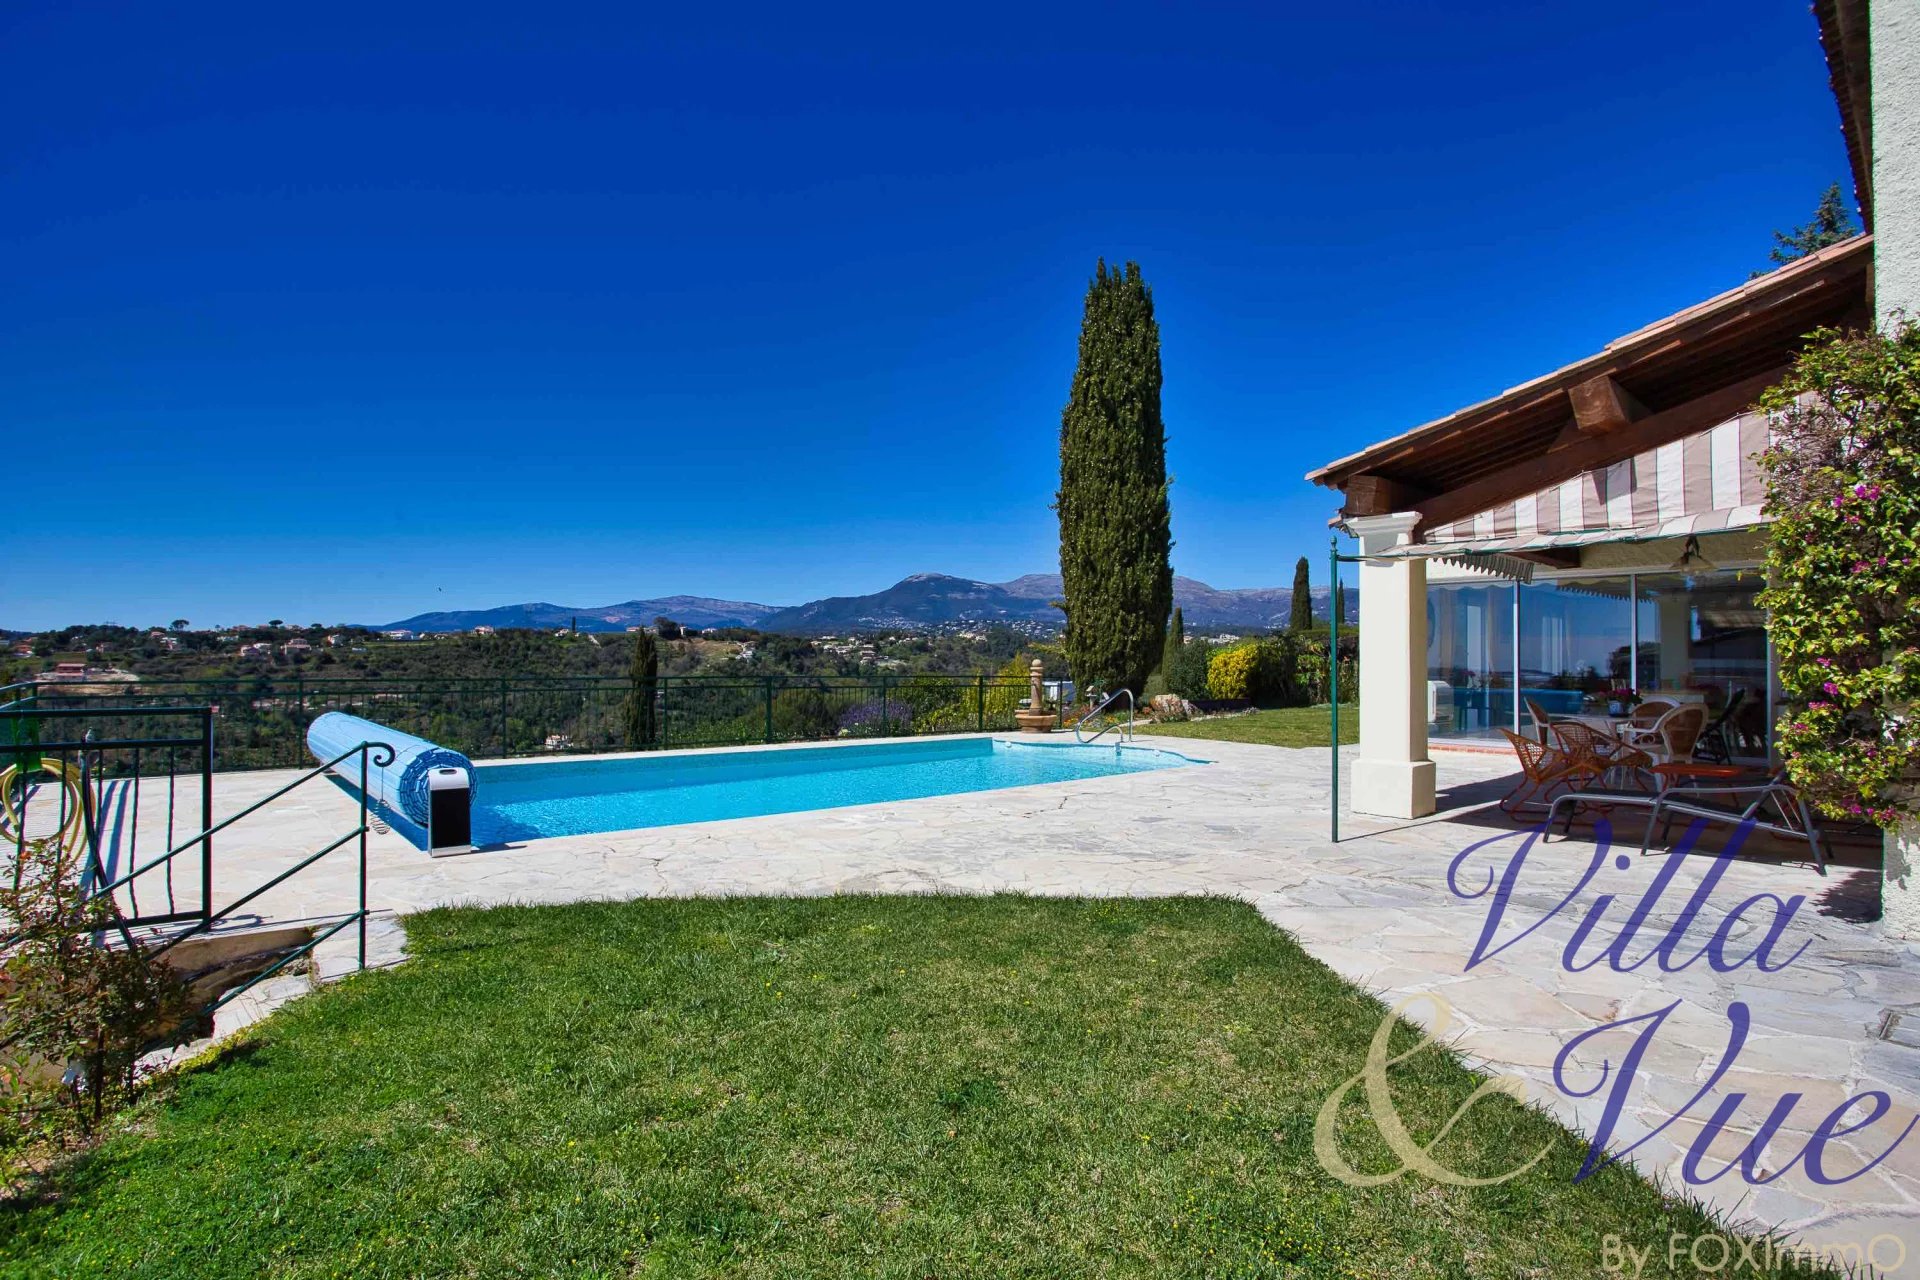 Côte d'Azur, magnifique villa vue mer au calme absolu, position dominante, piscine